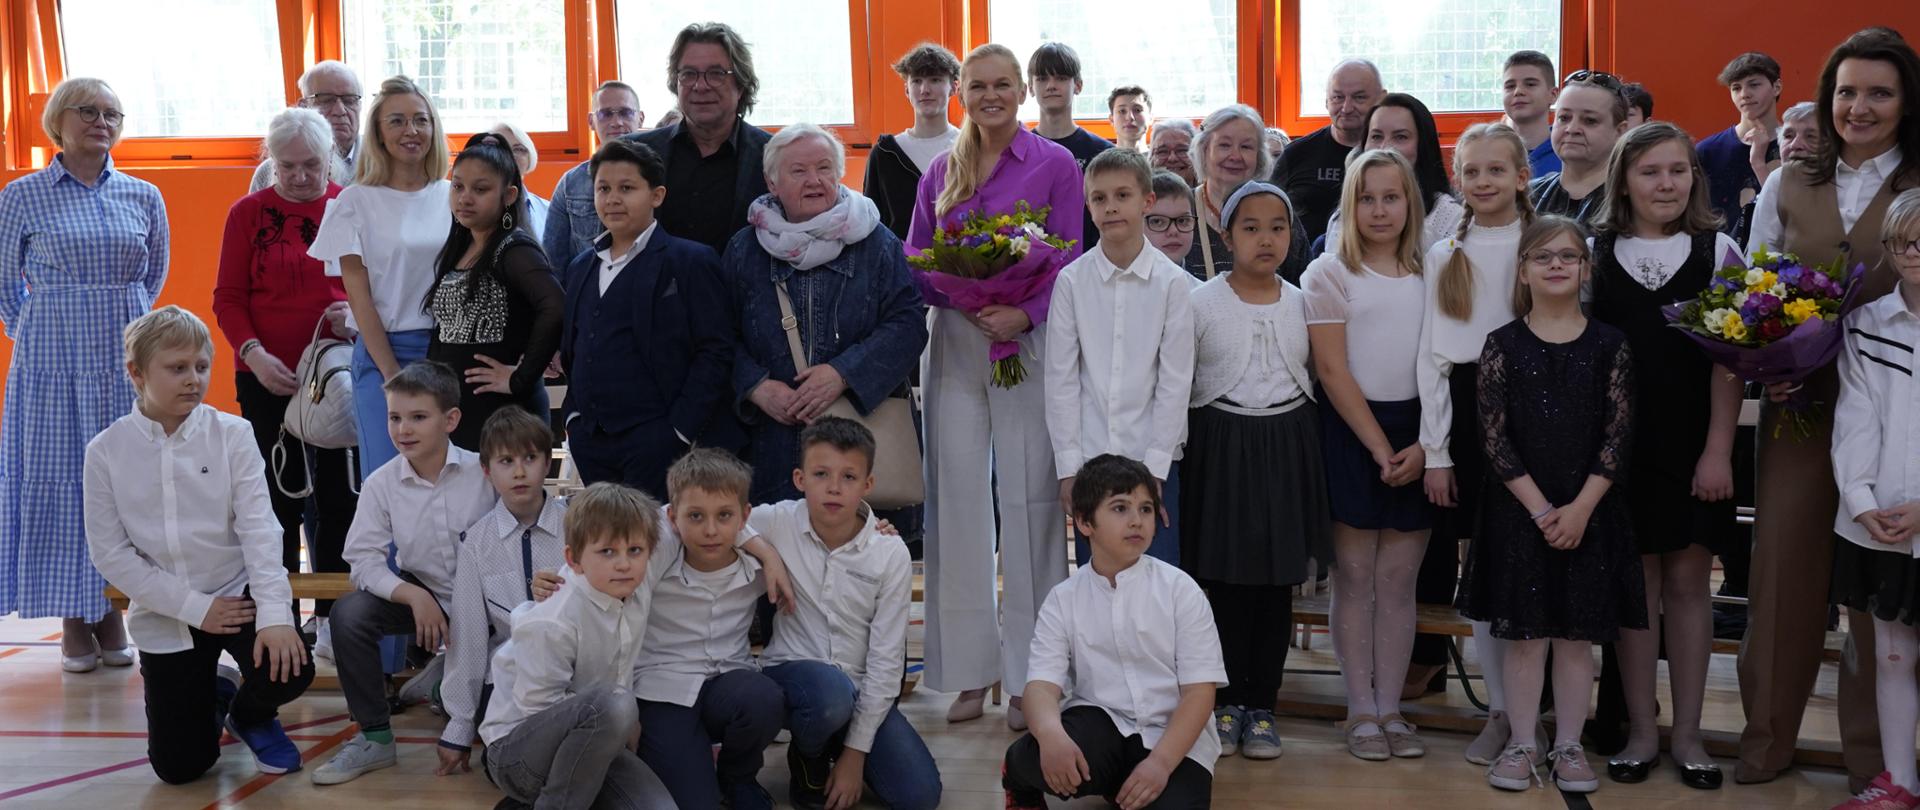 Zdjęcie zbiorowe, na sali stoi duża grupa ludzi, dzieci i dorosłych i pozuje do zdjęcia, wśród nich minister Barbara Nowacka